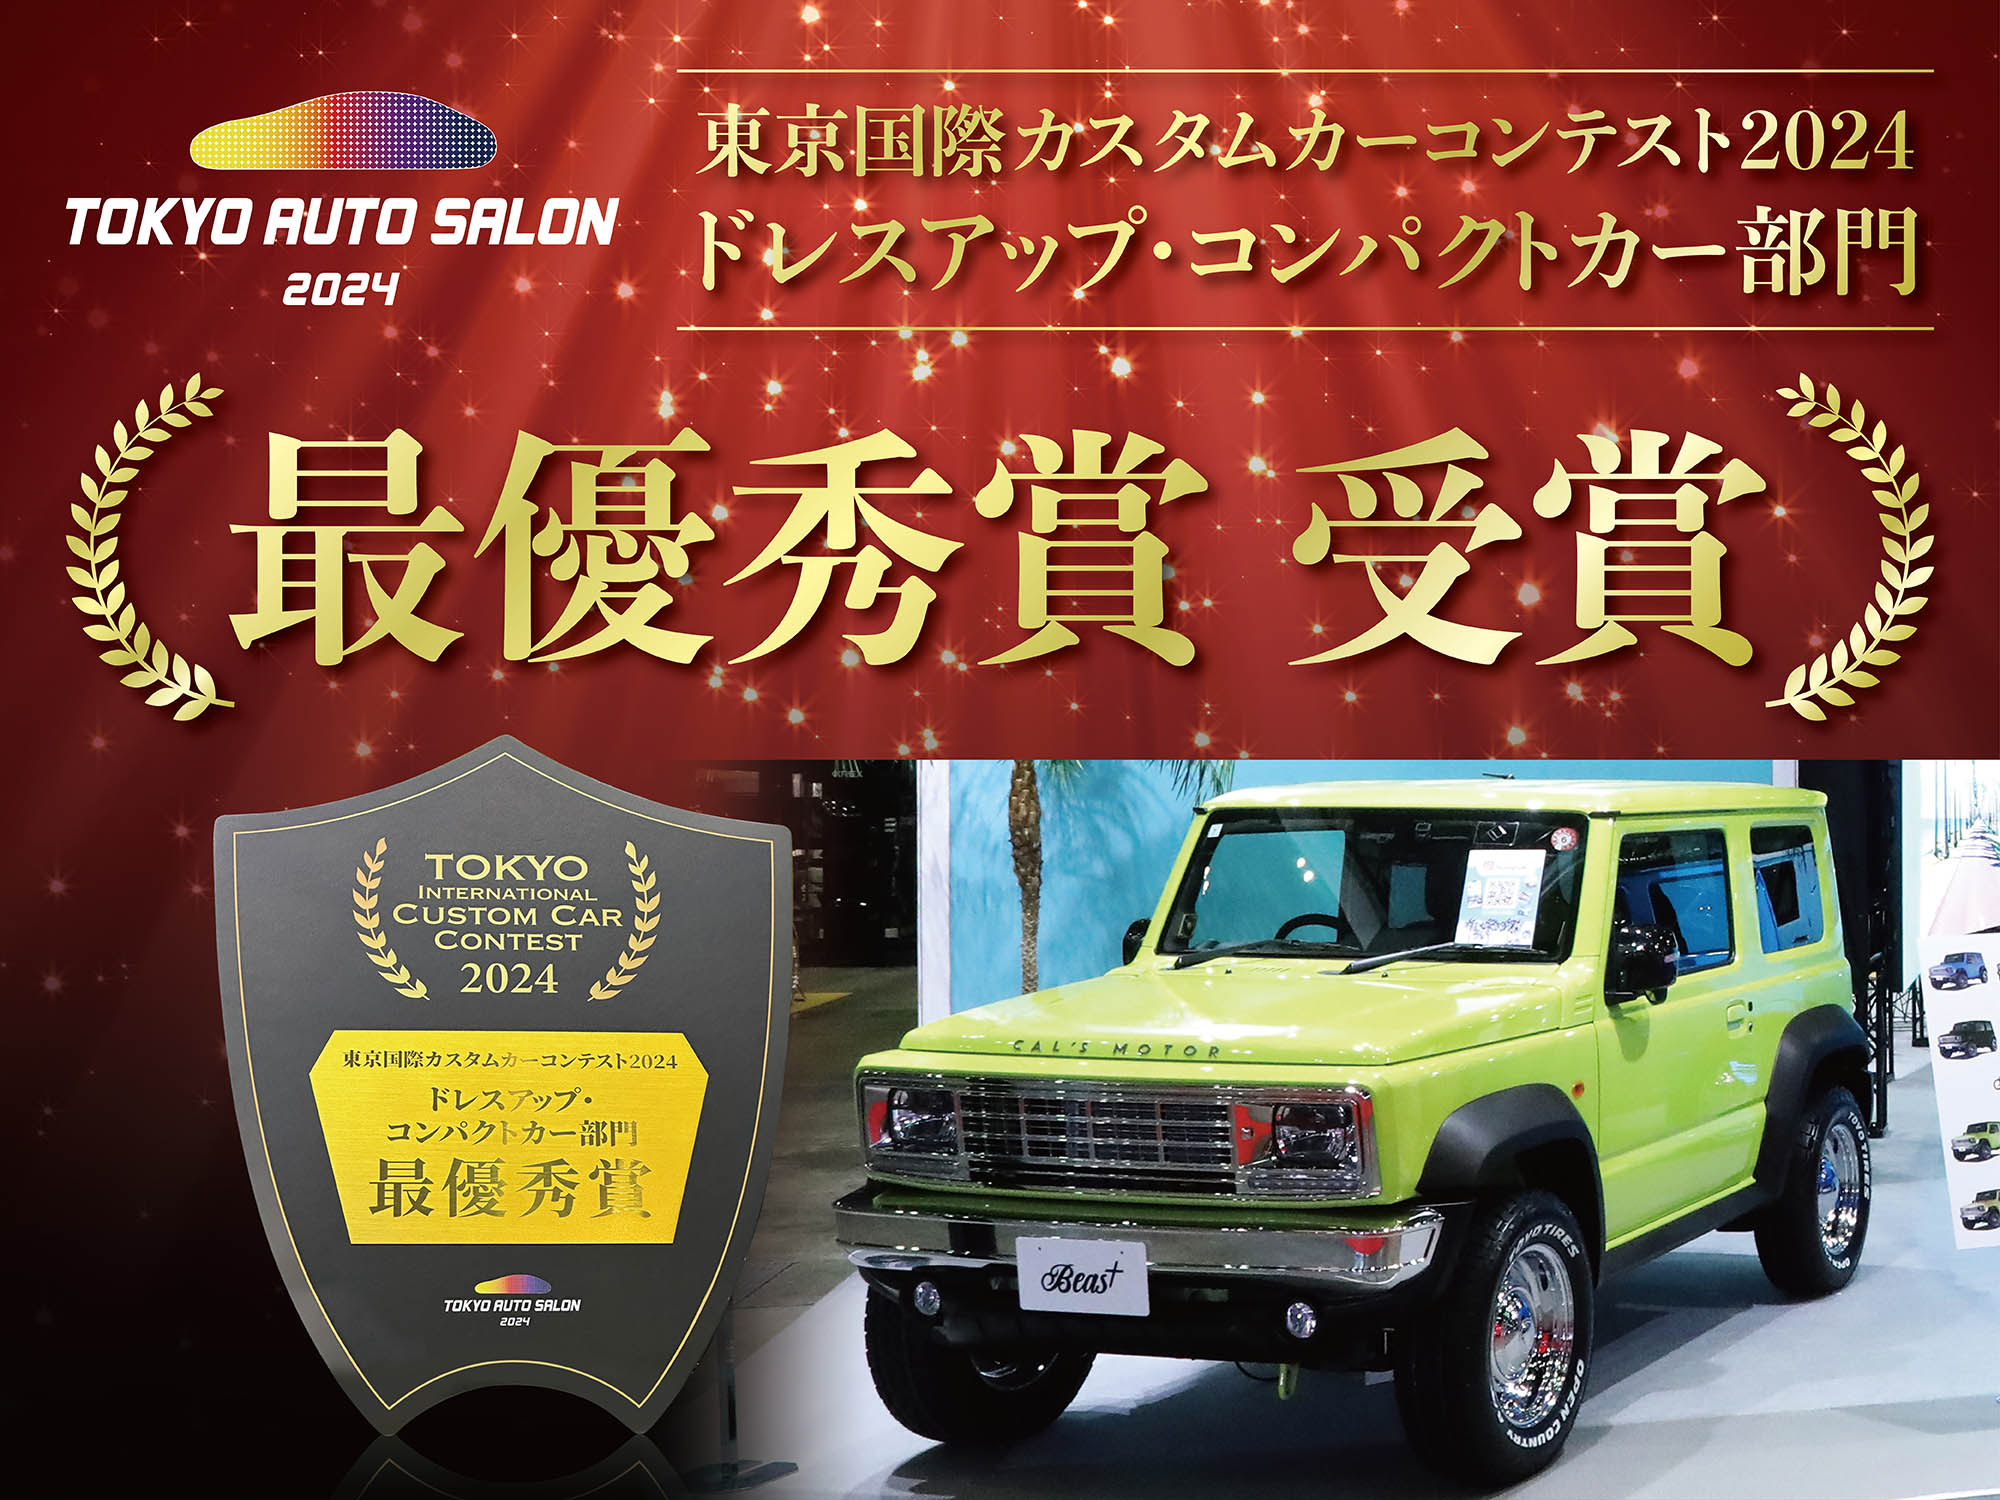 東京オートサロン2024東京国際カスタムカーコンテスト[ドレスアップ・コンパクトカー部門]でBeas+が最優秀賞を受賞しました。